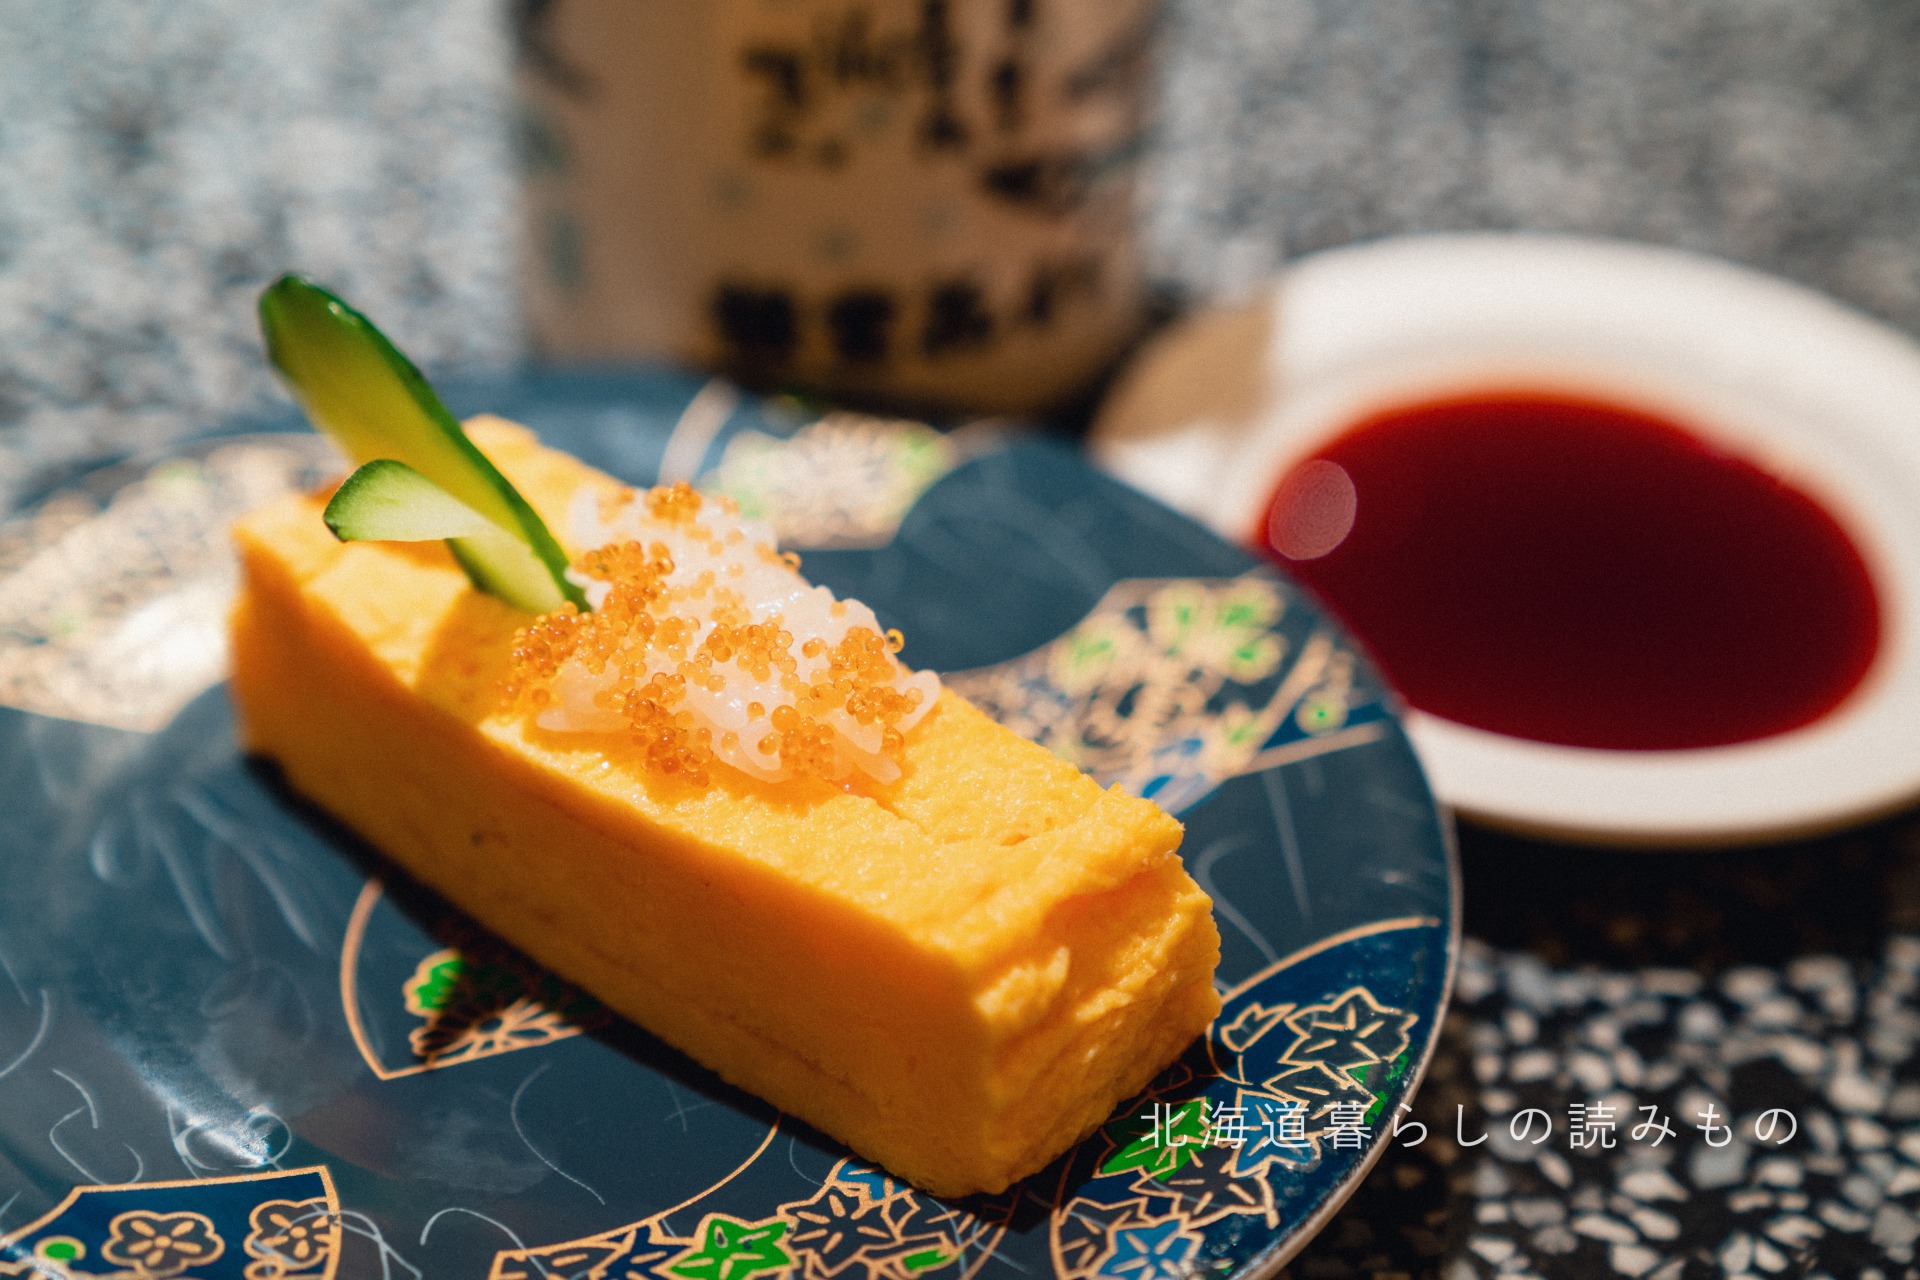 回転寿司 根室花まるのメニュー「玉子サンド」の写真